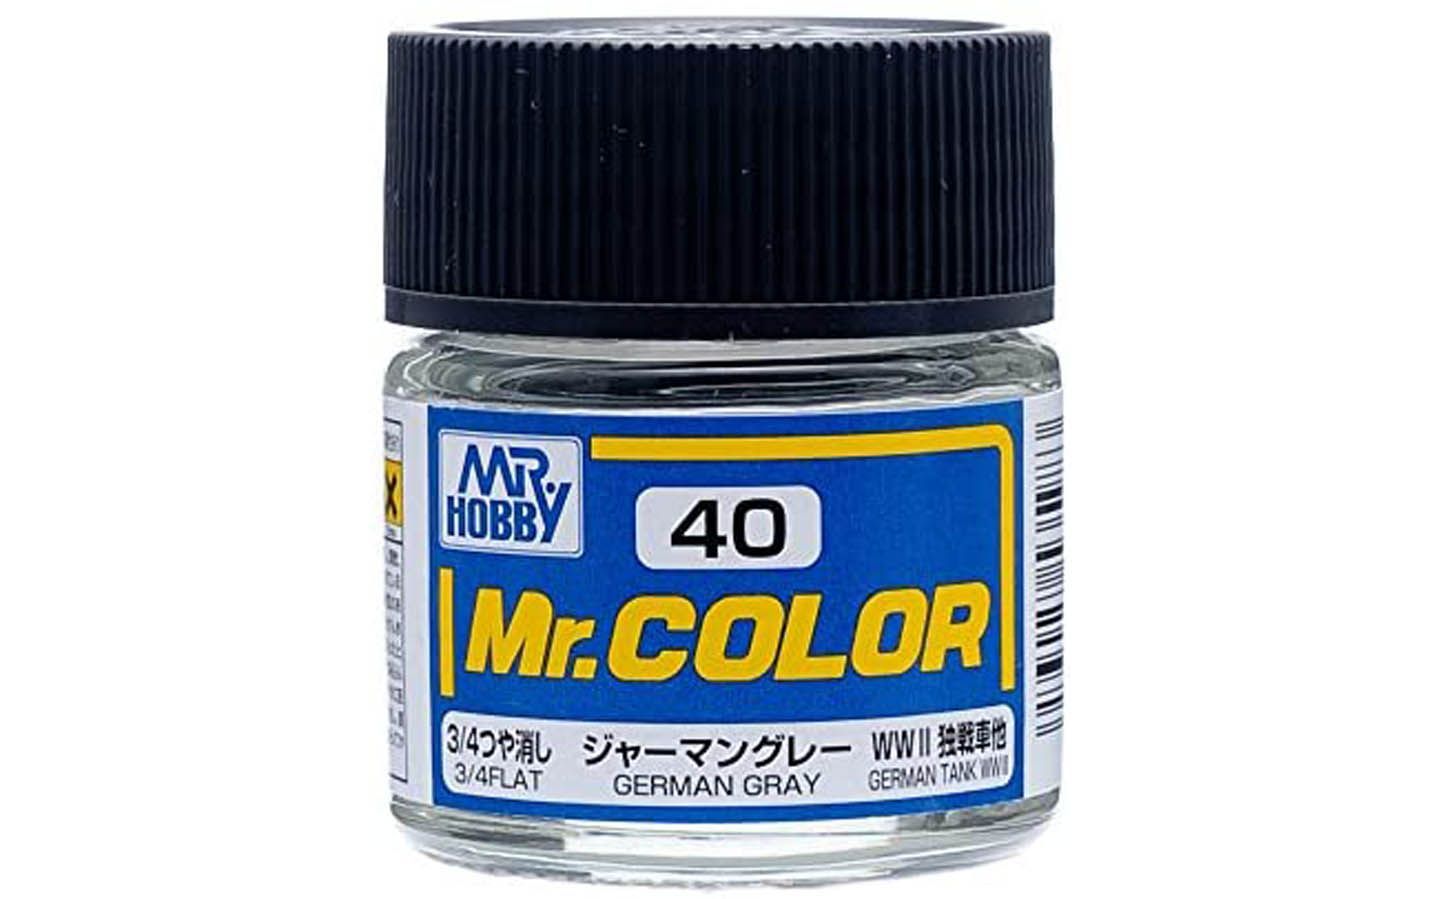 Цвет mr. Краска Mr Hobby 305 FS 36118. Mr Color - c78 Metal Black краска. C137 краска художественная т.м. Mr.Hobby 10мл Tire Black. Краска GUNZE Mr.Color.